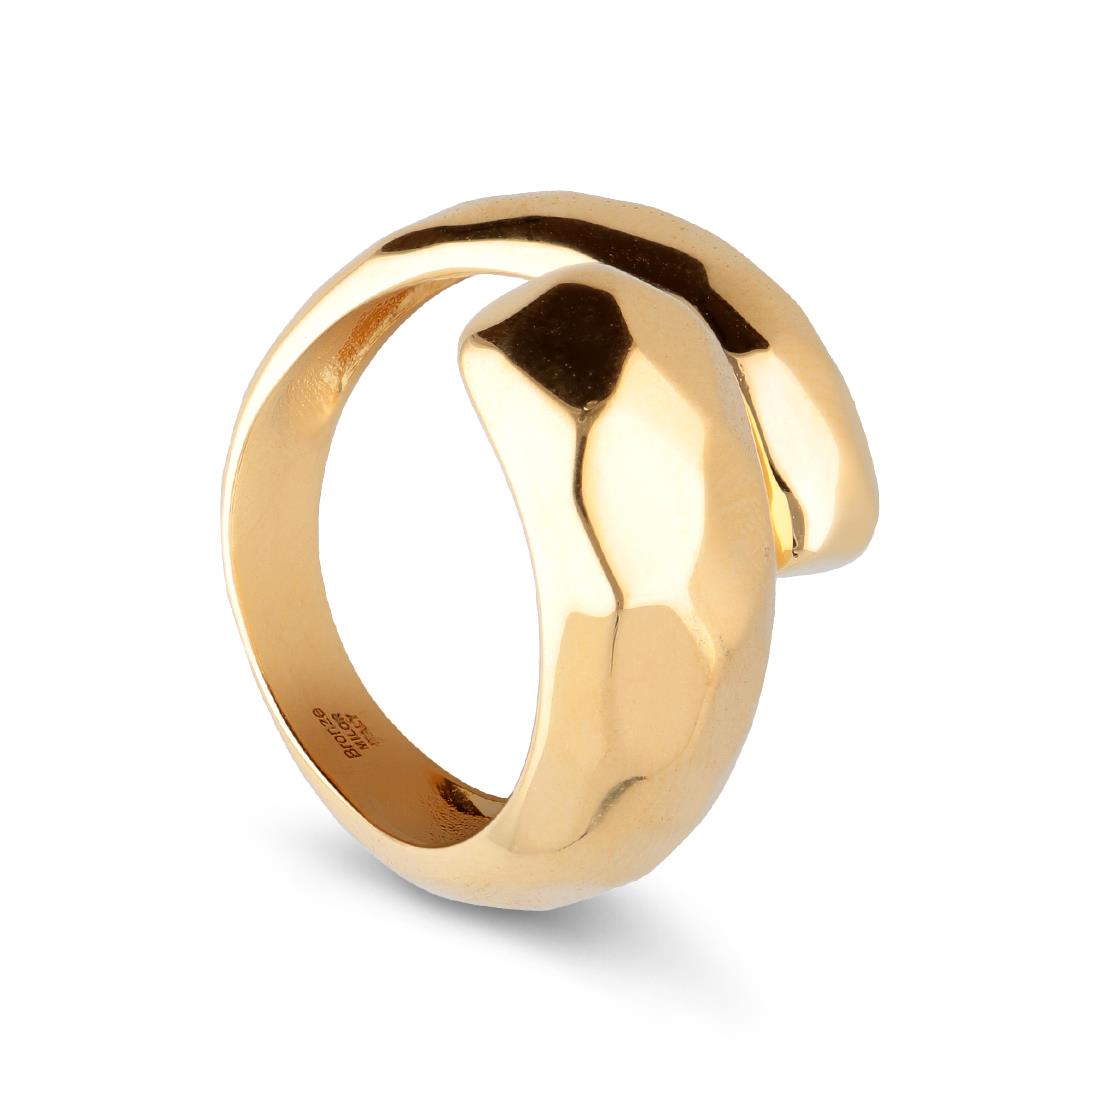 El anillo Contrari está chapado en oro. - TOSCANA BY ETRUSCA